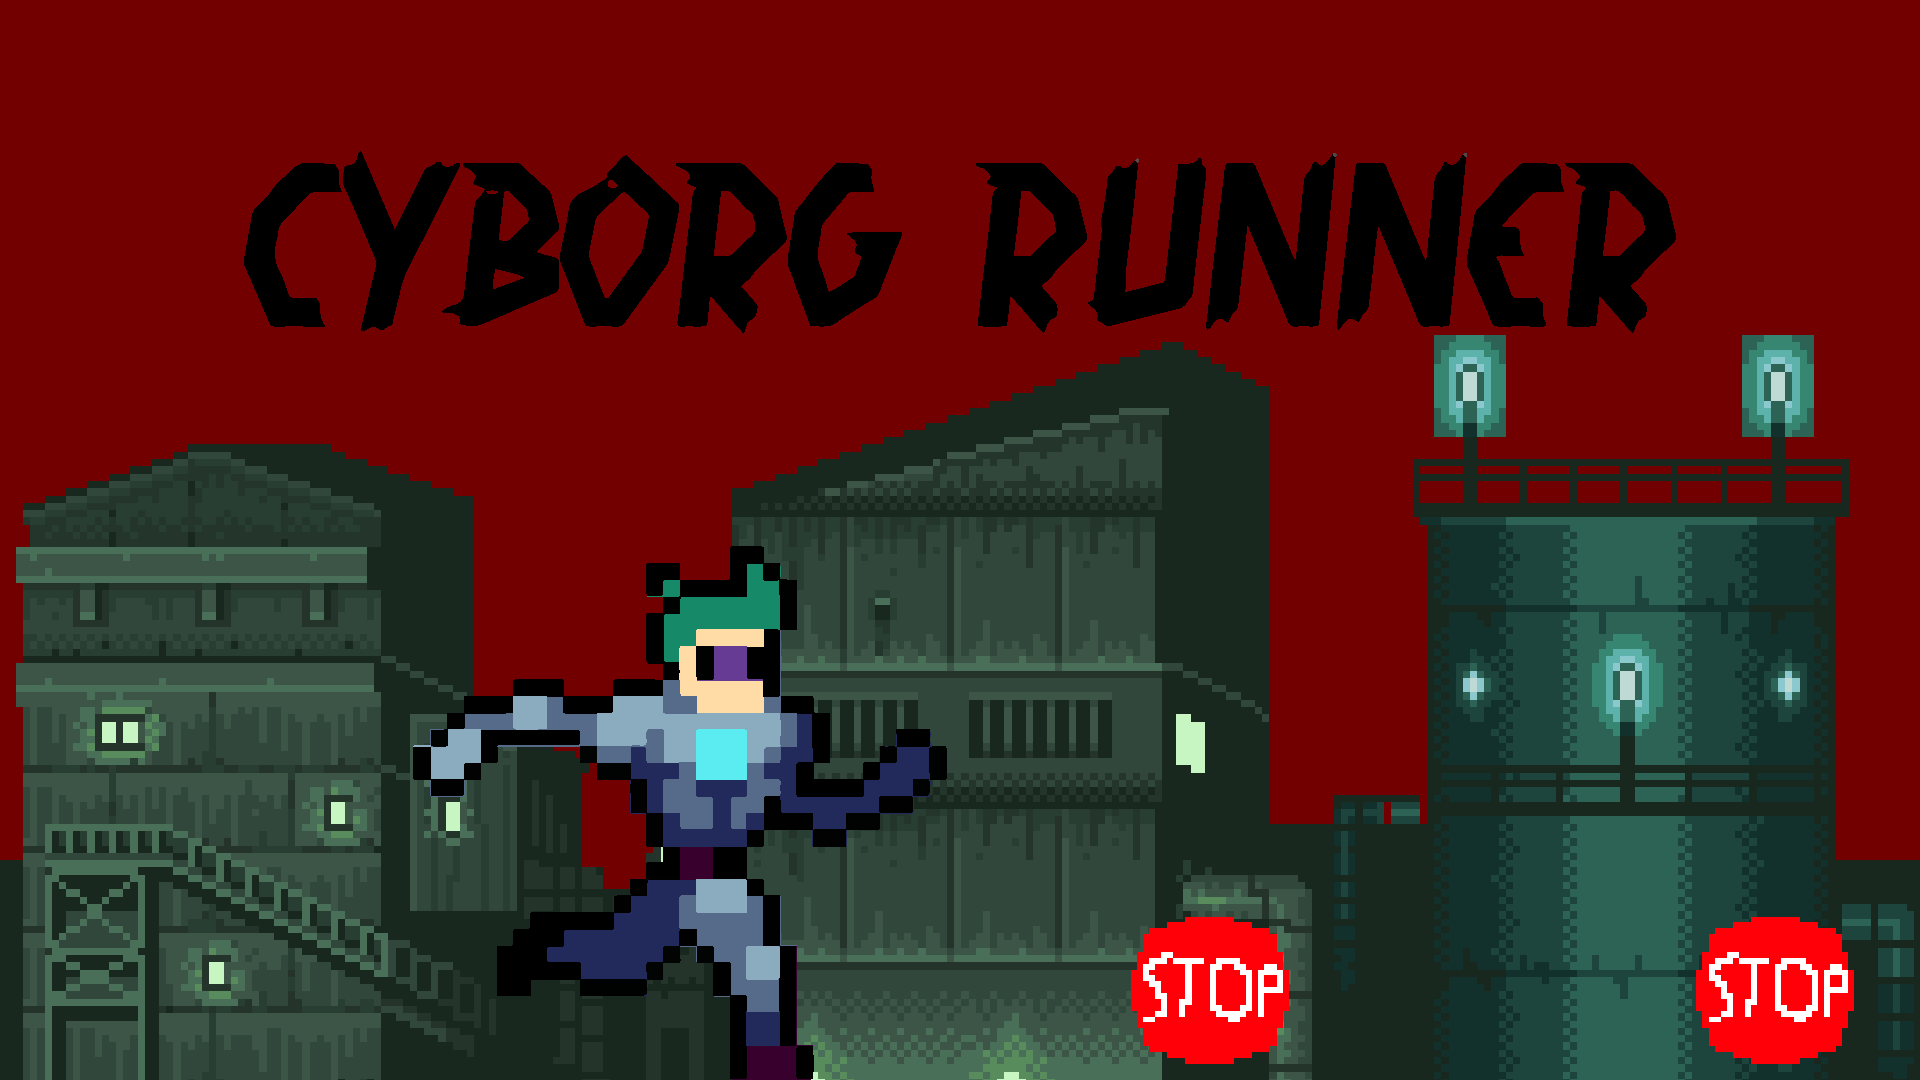 Cyborg Runner 